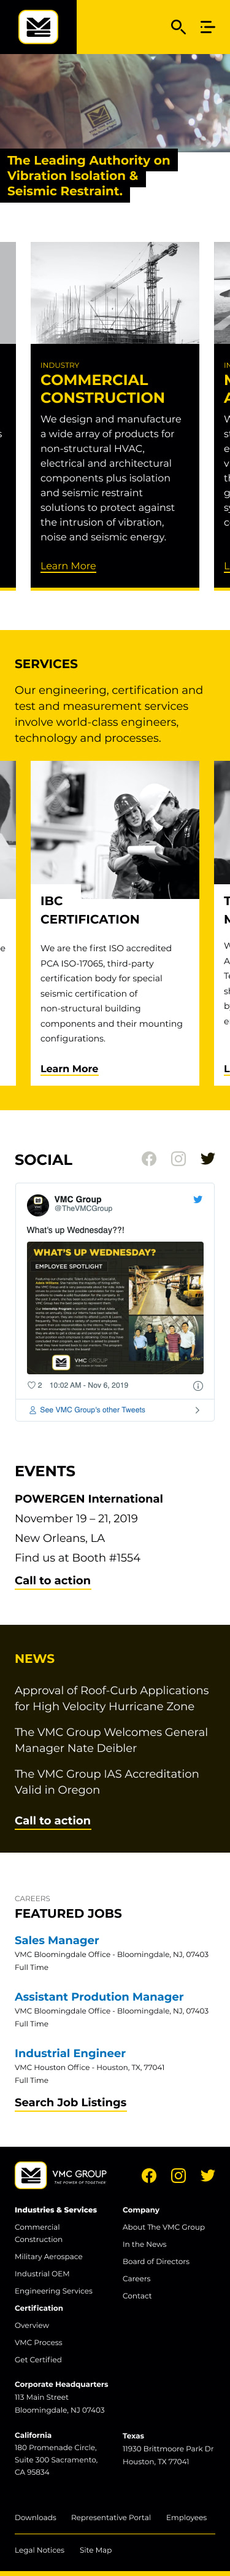 VMC Group Homepage, mobile